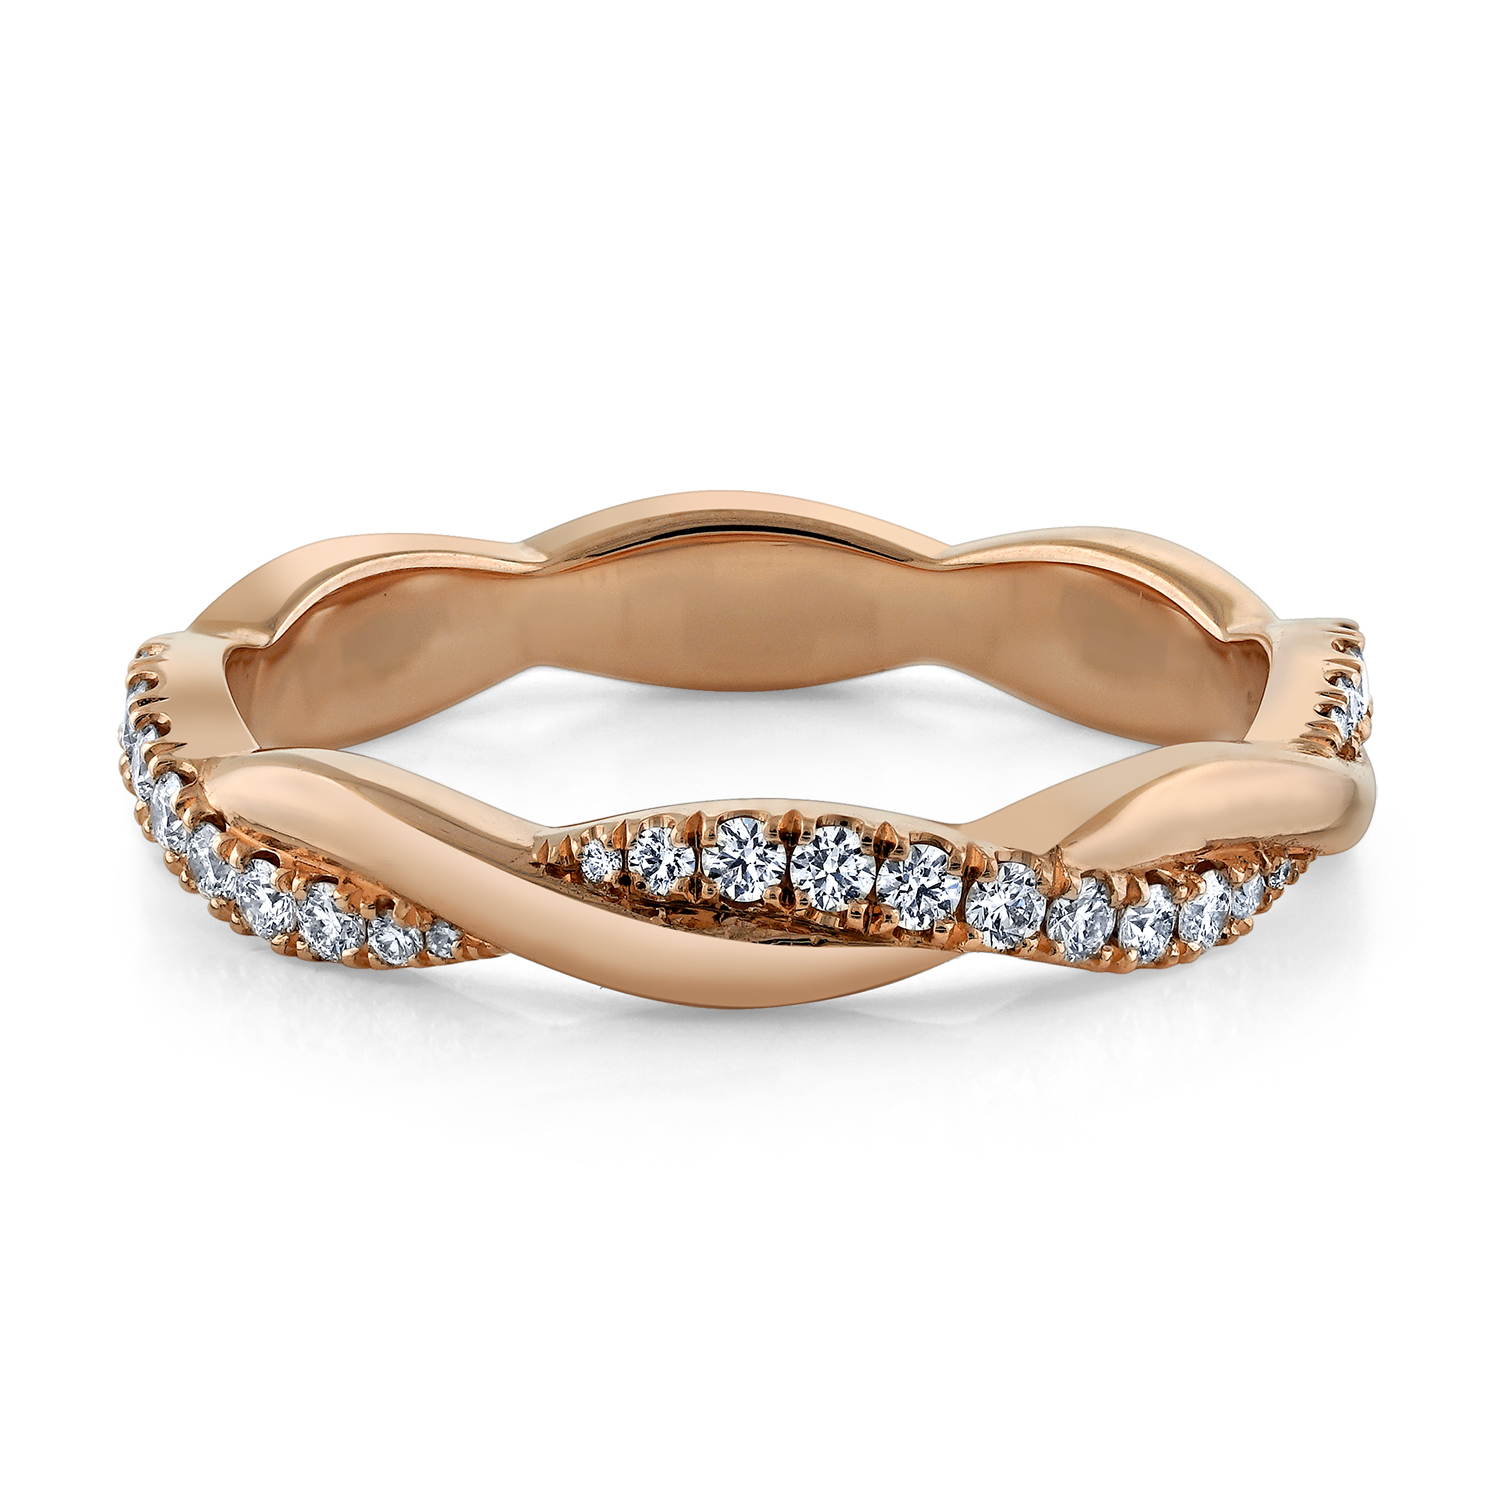 ring, gold, diamonds, jewelry photography, beautiful ring, wedding band